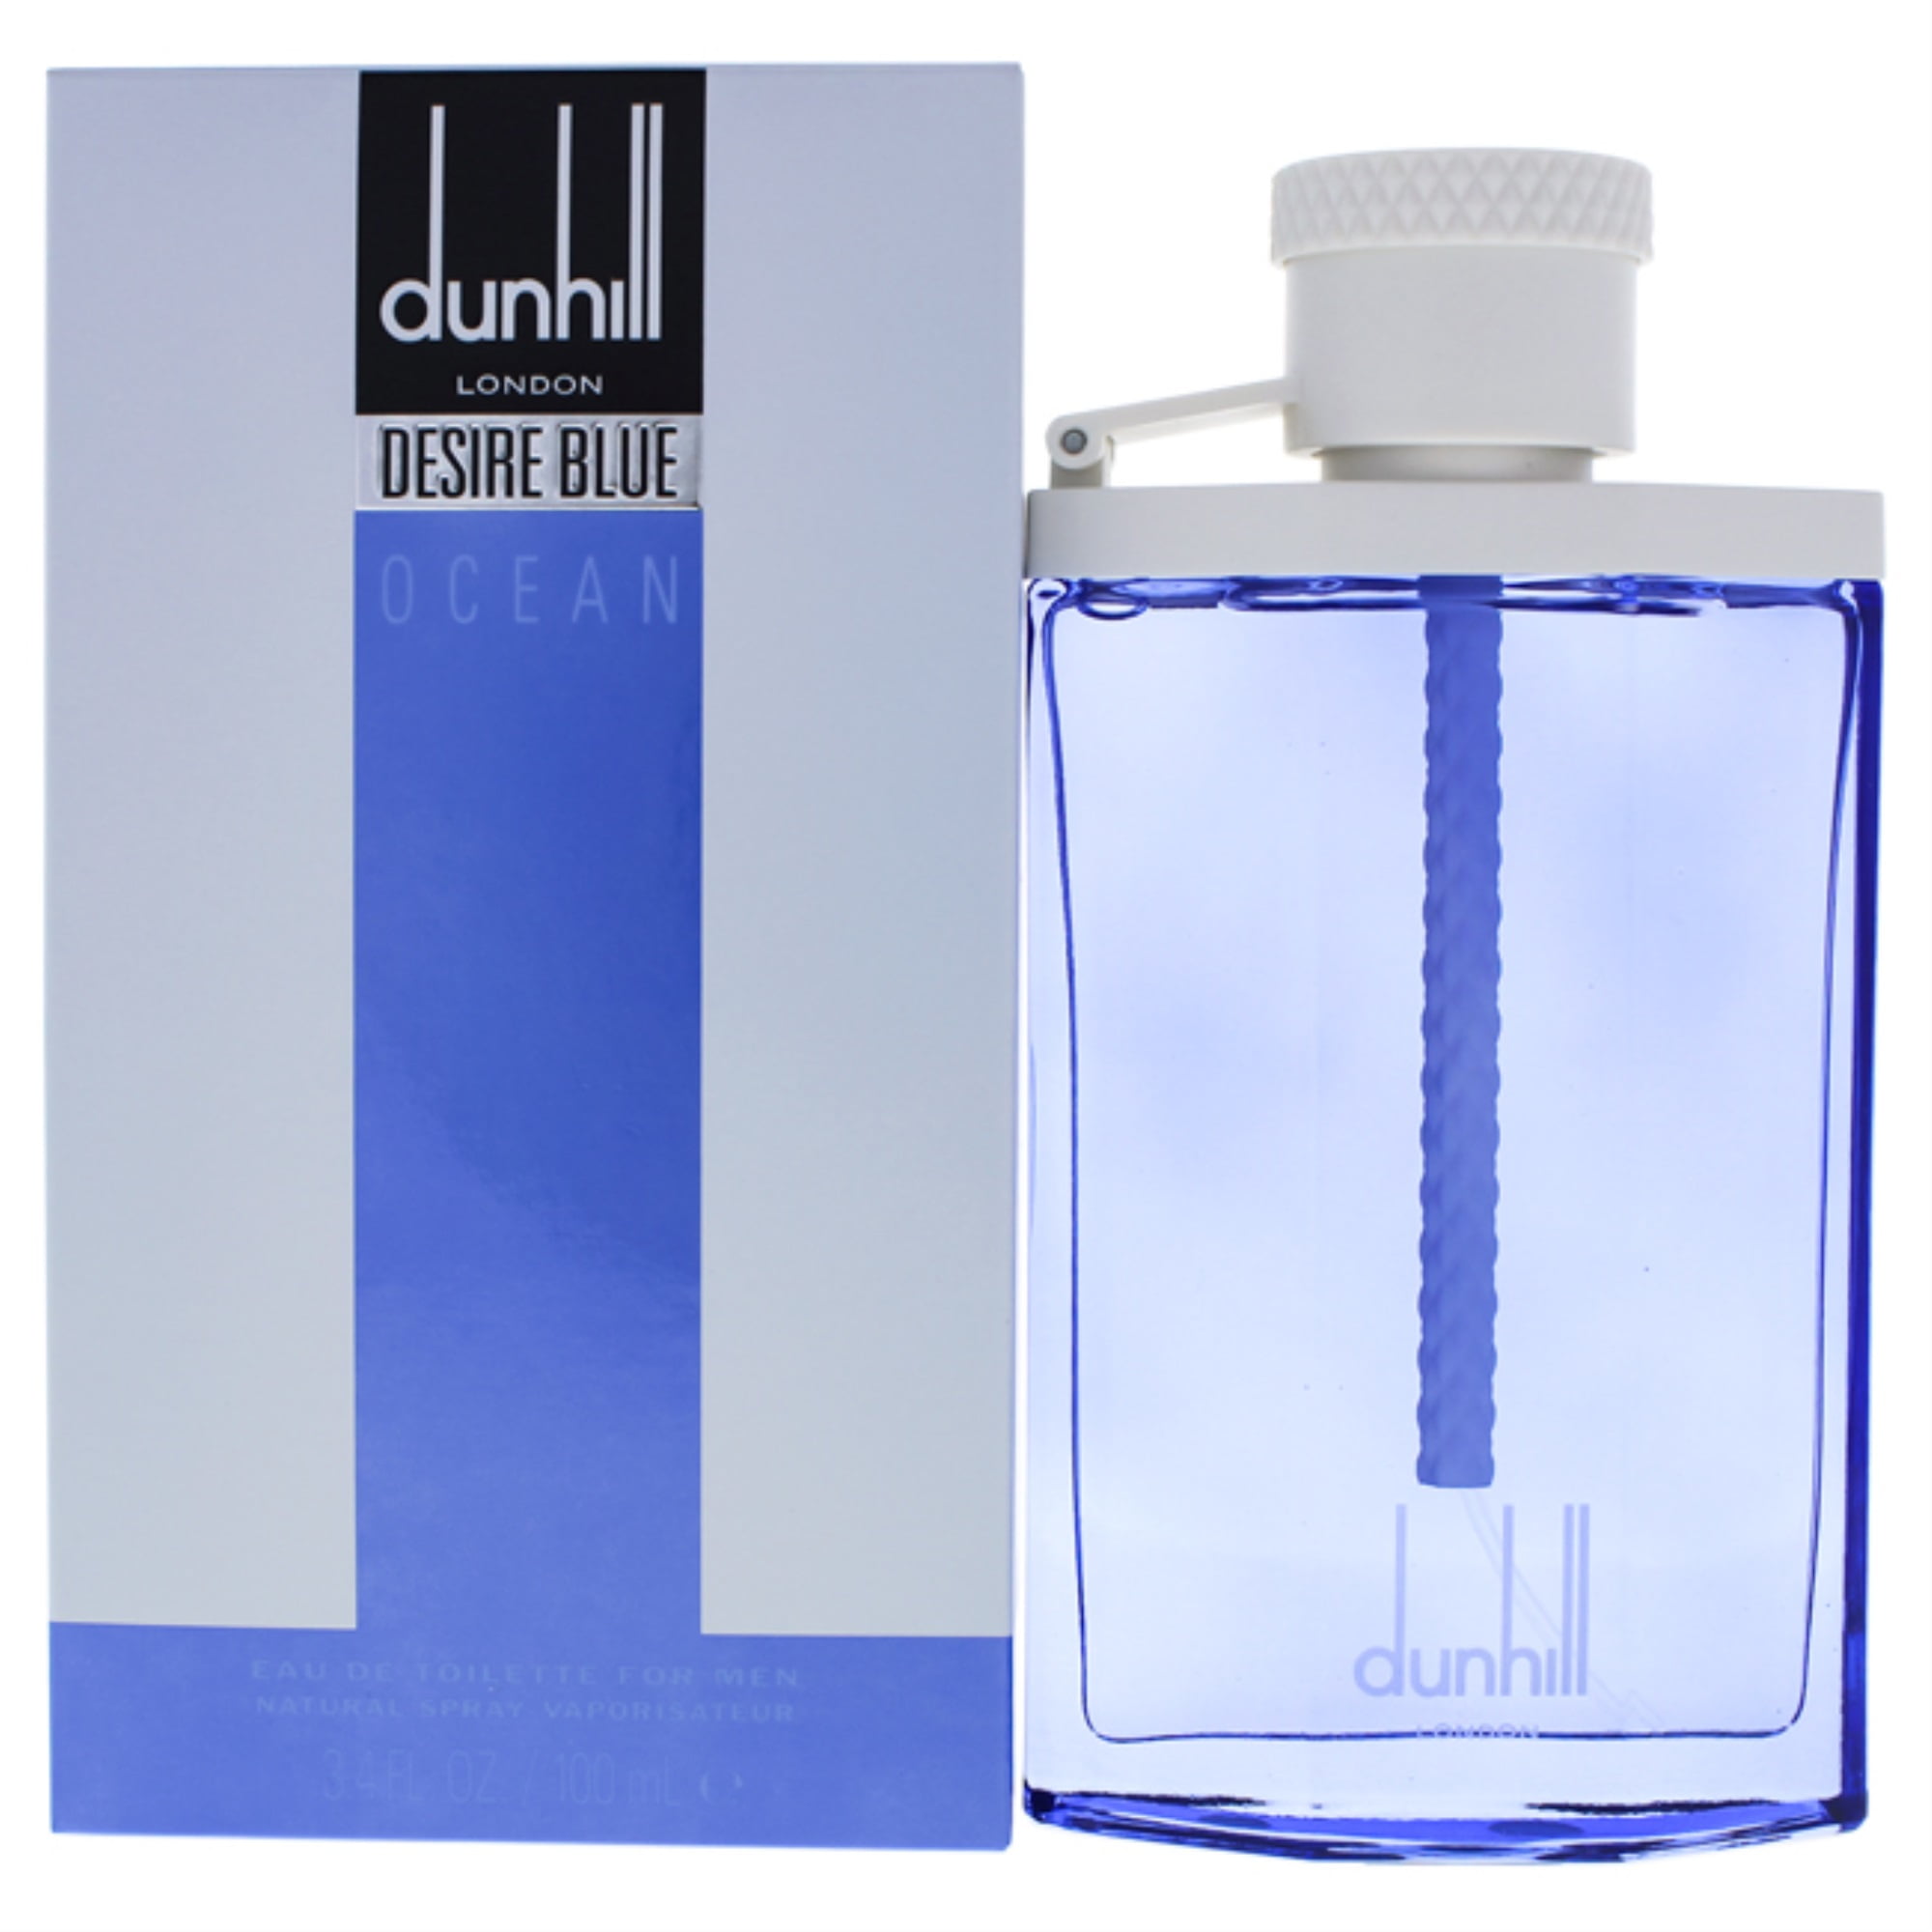 Alfred Dunhill Desire Blue Ocean Eau de Toilette, Cologne for Men